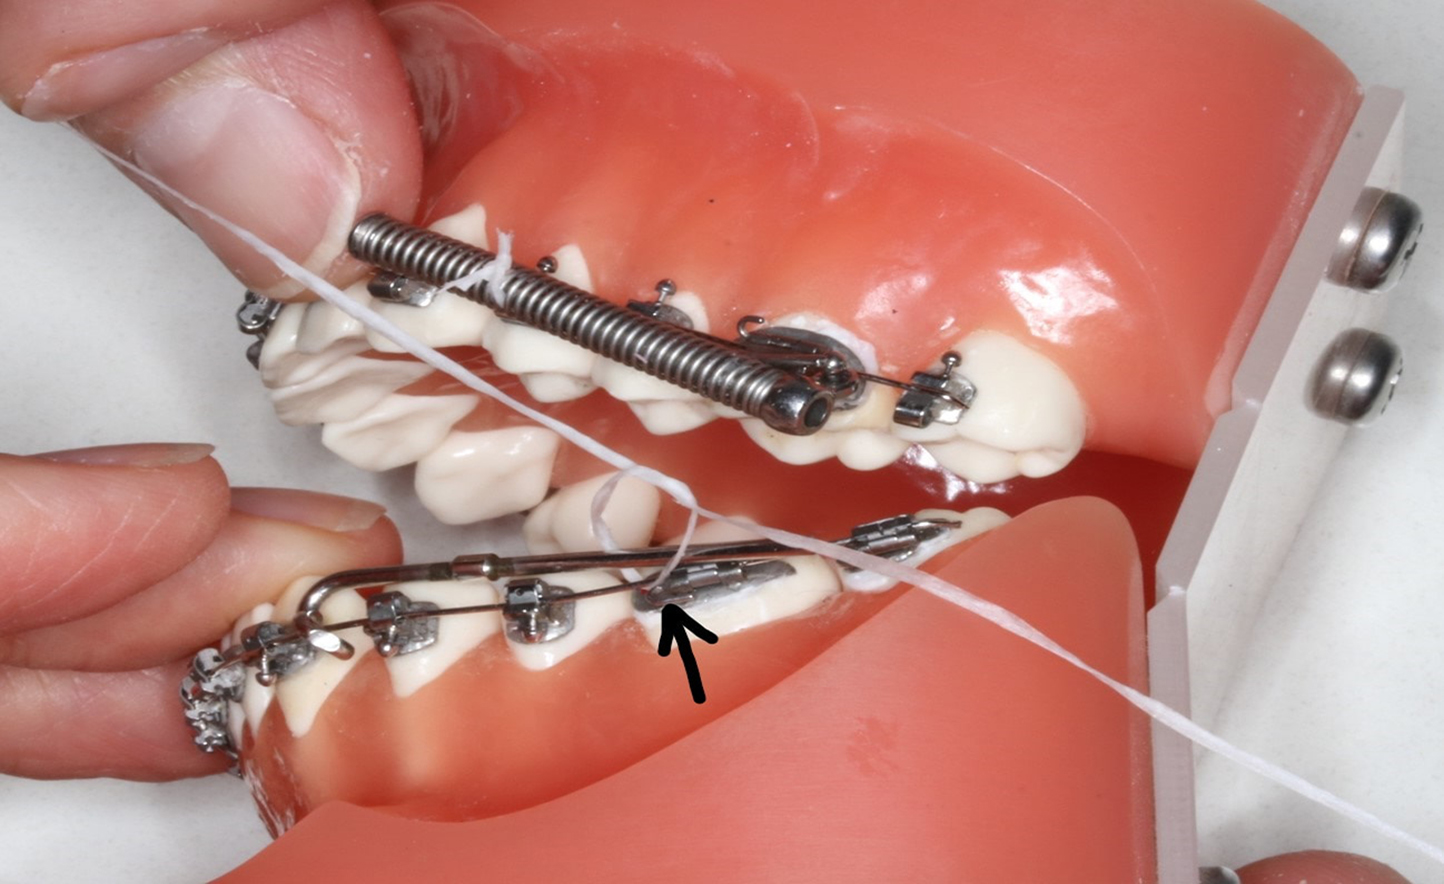 Réparation avec soie dentaire de tige métallique sortie du ressort dentaire.